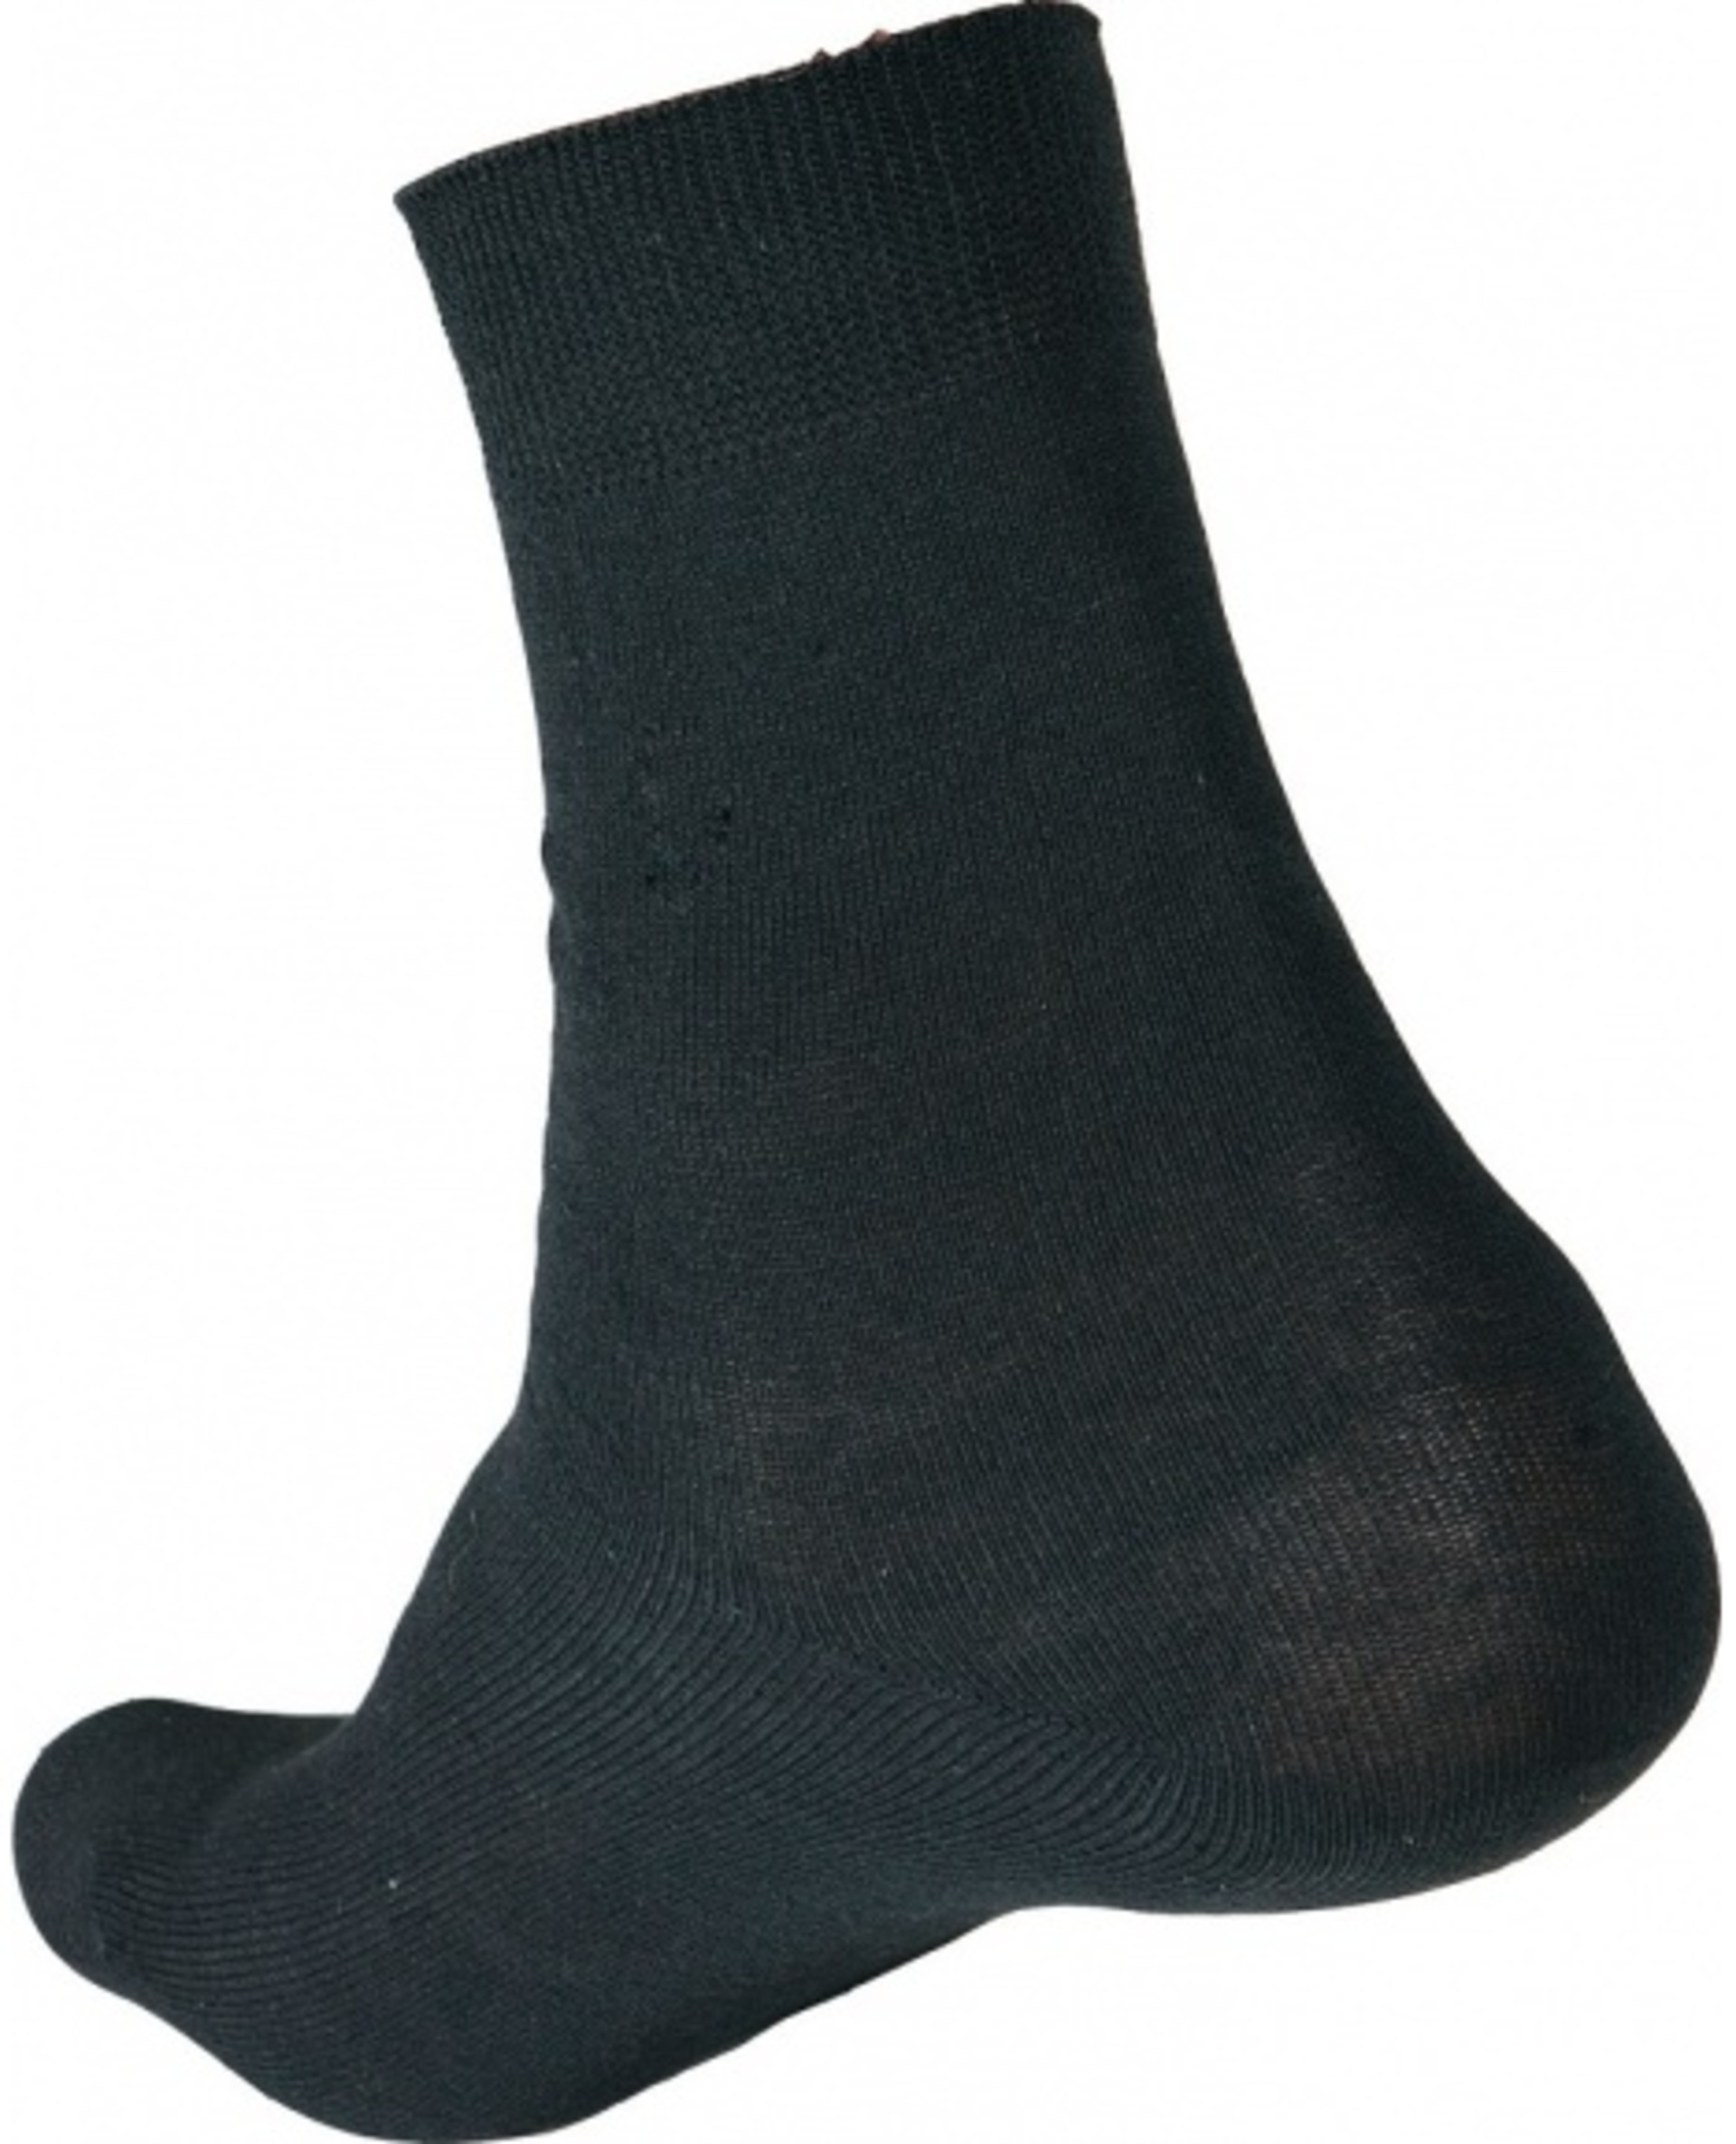 Ponožky CRV MERGE 40